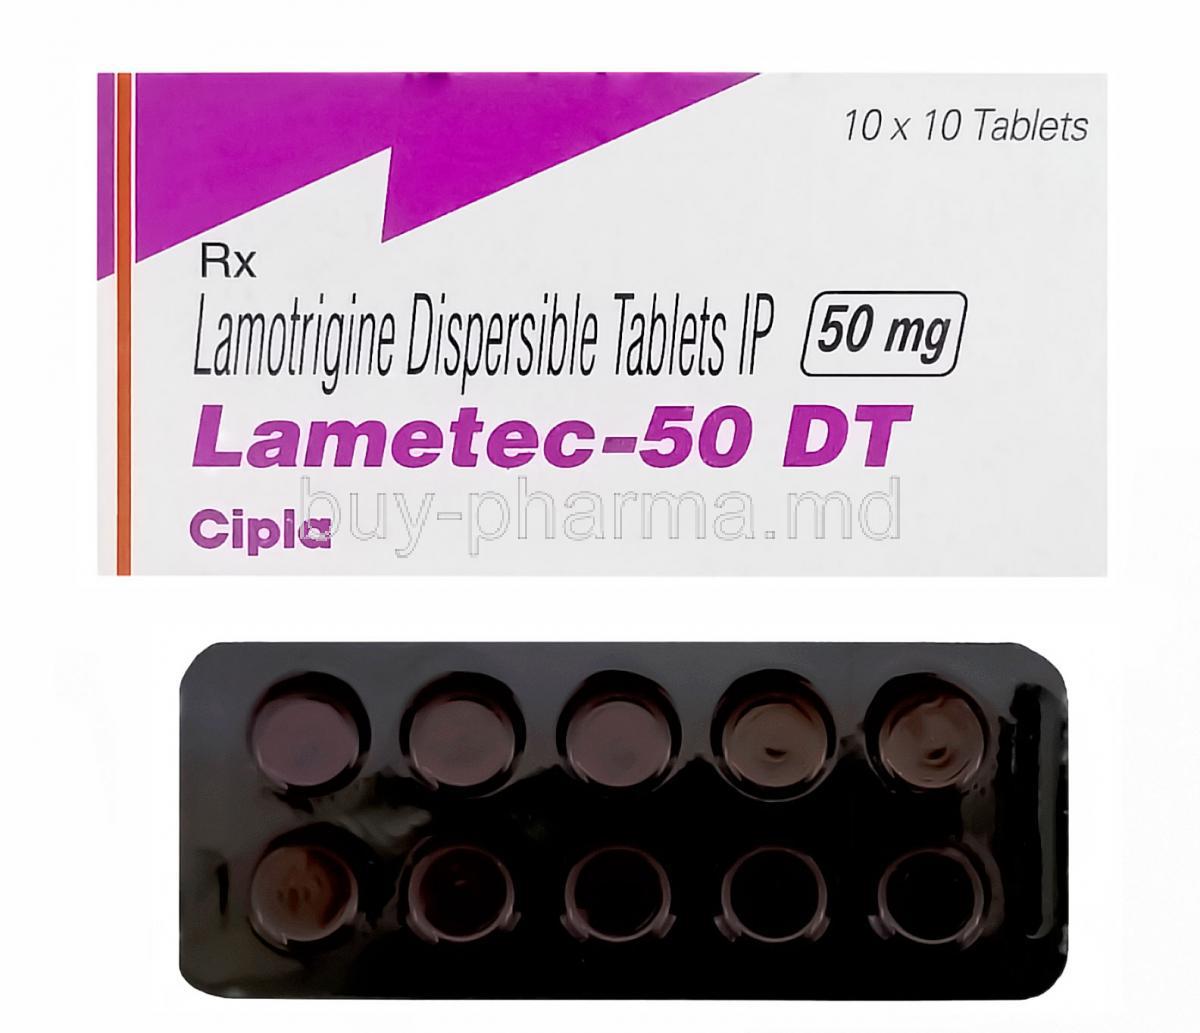 Lametec-50 DT, Generic Lamictal, Lamotrigine 50mg